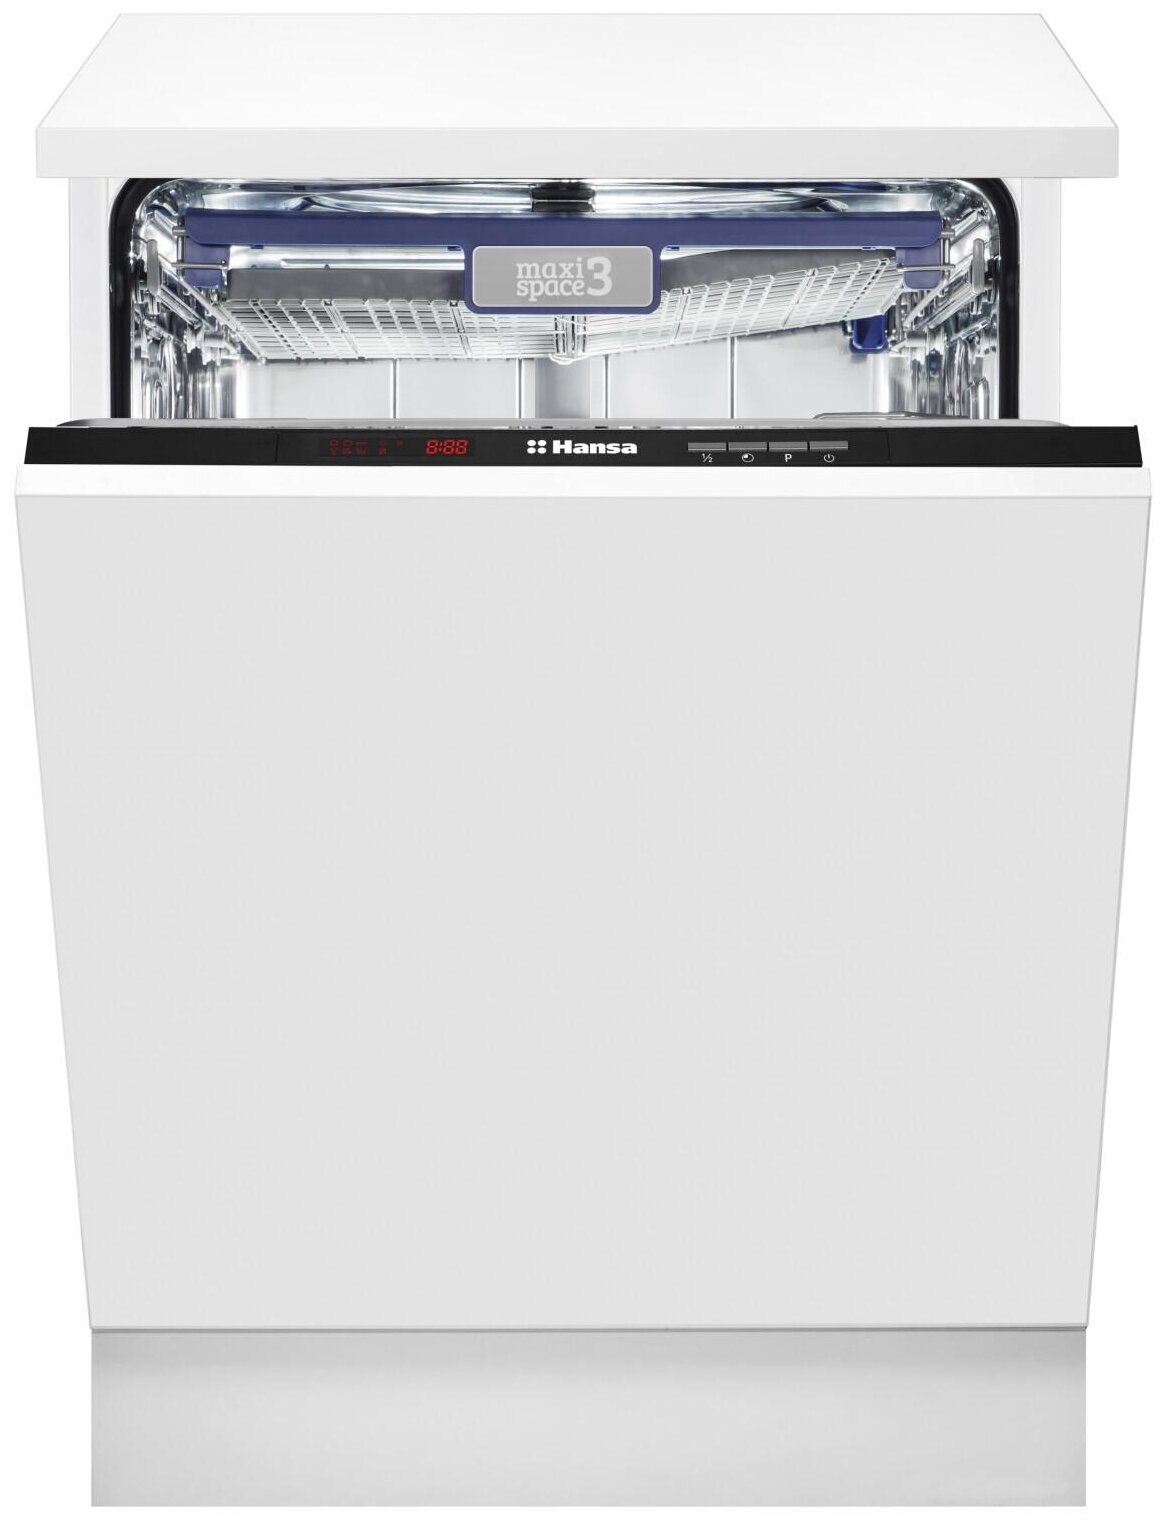 Встраиваемая посудомоечная машина Hansa ZIM626EH, серебристый